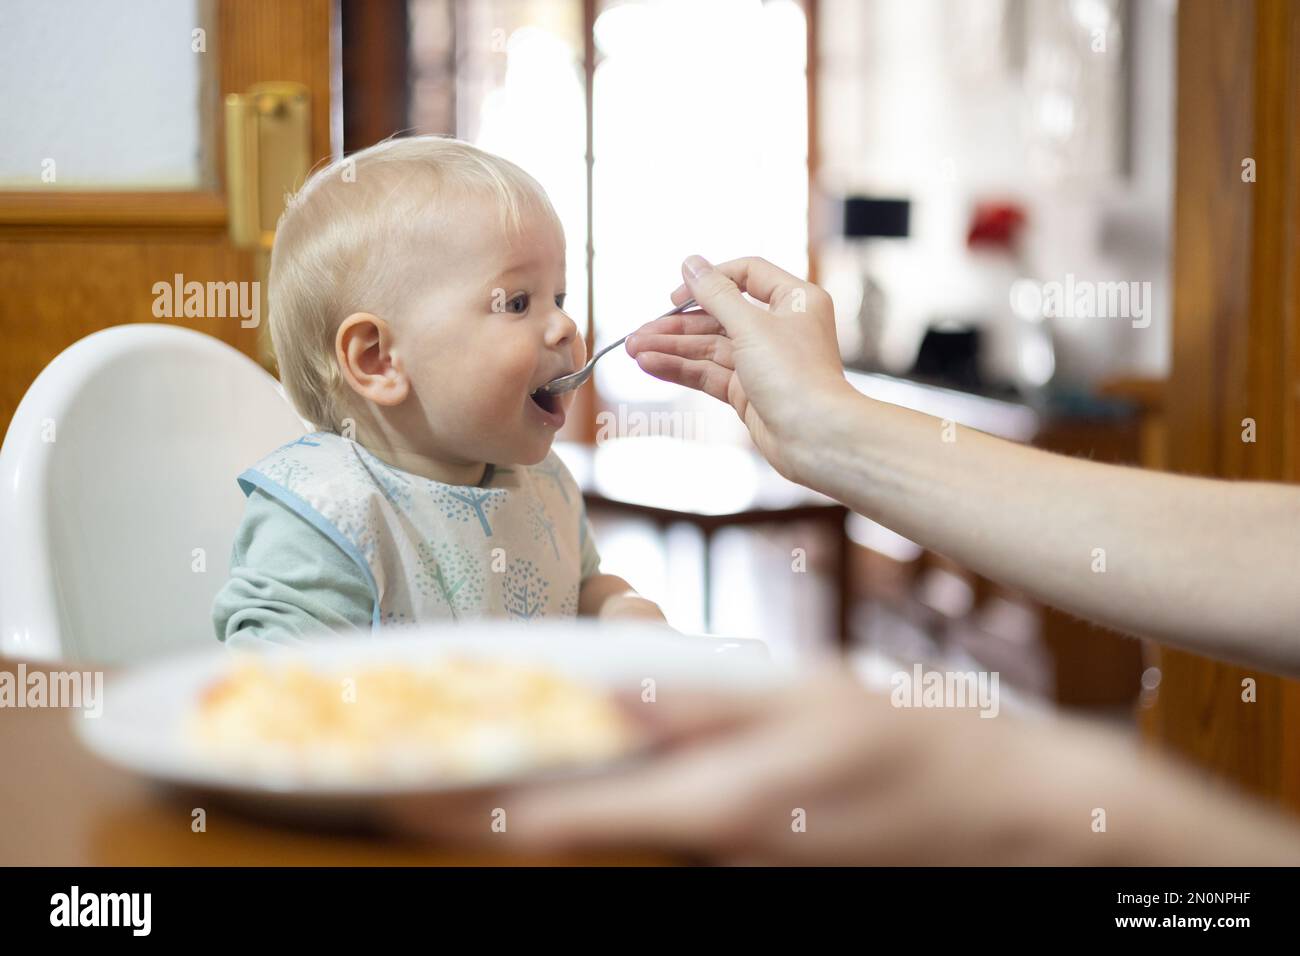 Il cucchiaio della madre che alimenta il suo bambino bambino del bambino del bambino del bambino del bambino che si siede in seggiolone al tavolo da pranzo in cucina a casa. Foto Stock